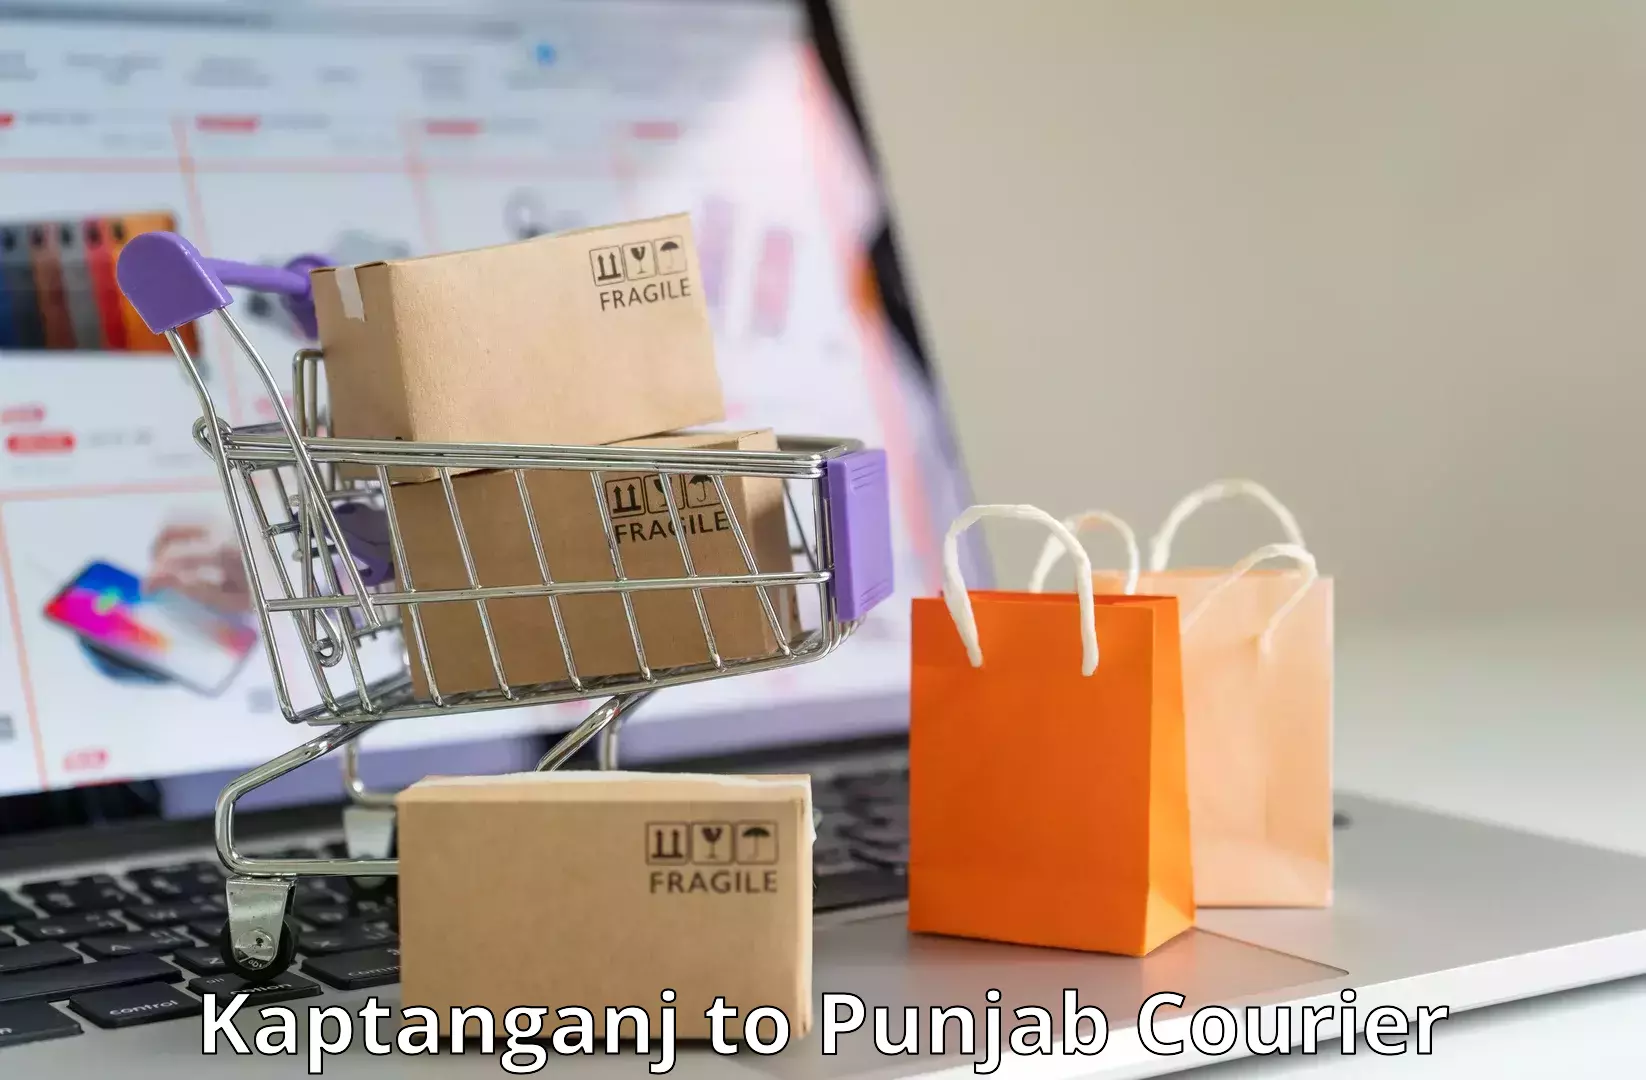 State-of-the-art courier technology Kaptanganj to Punjab